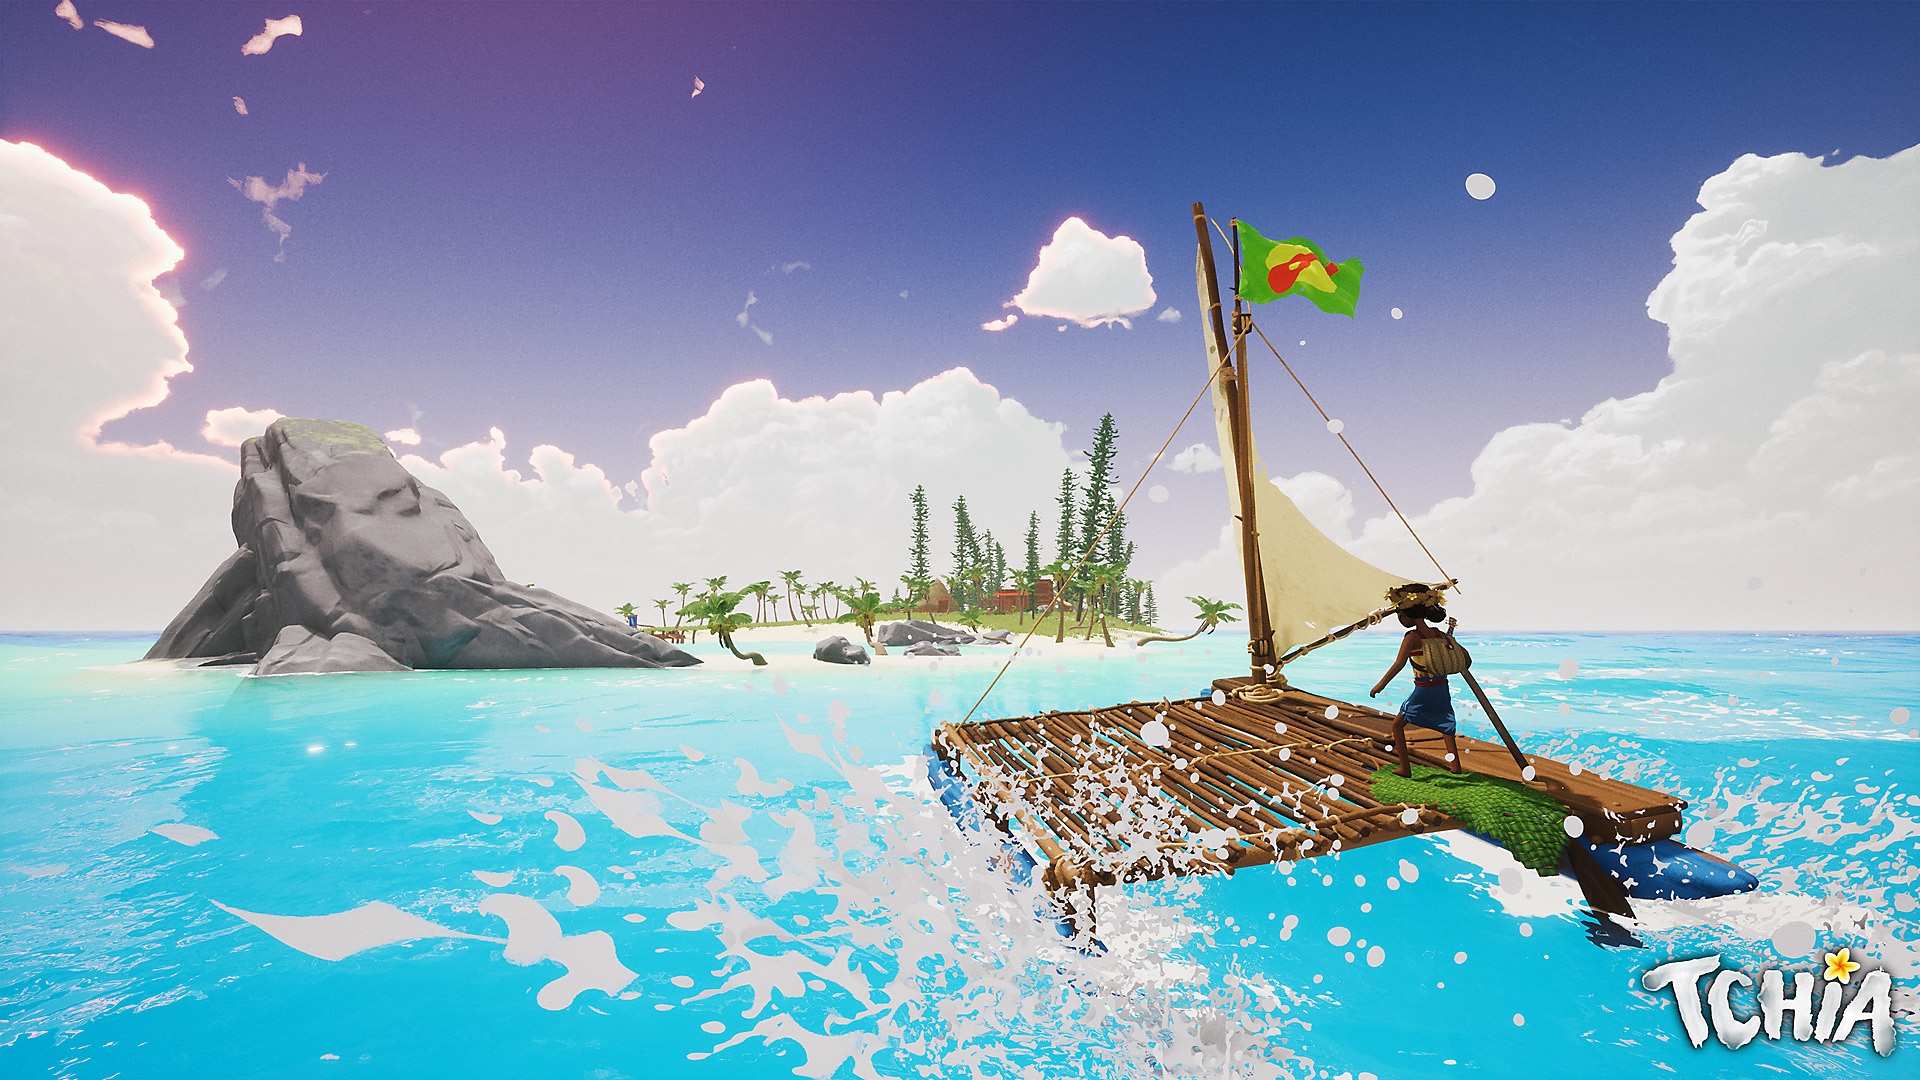 Tchia screenshot showing main character sailing on a raft towards an island